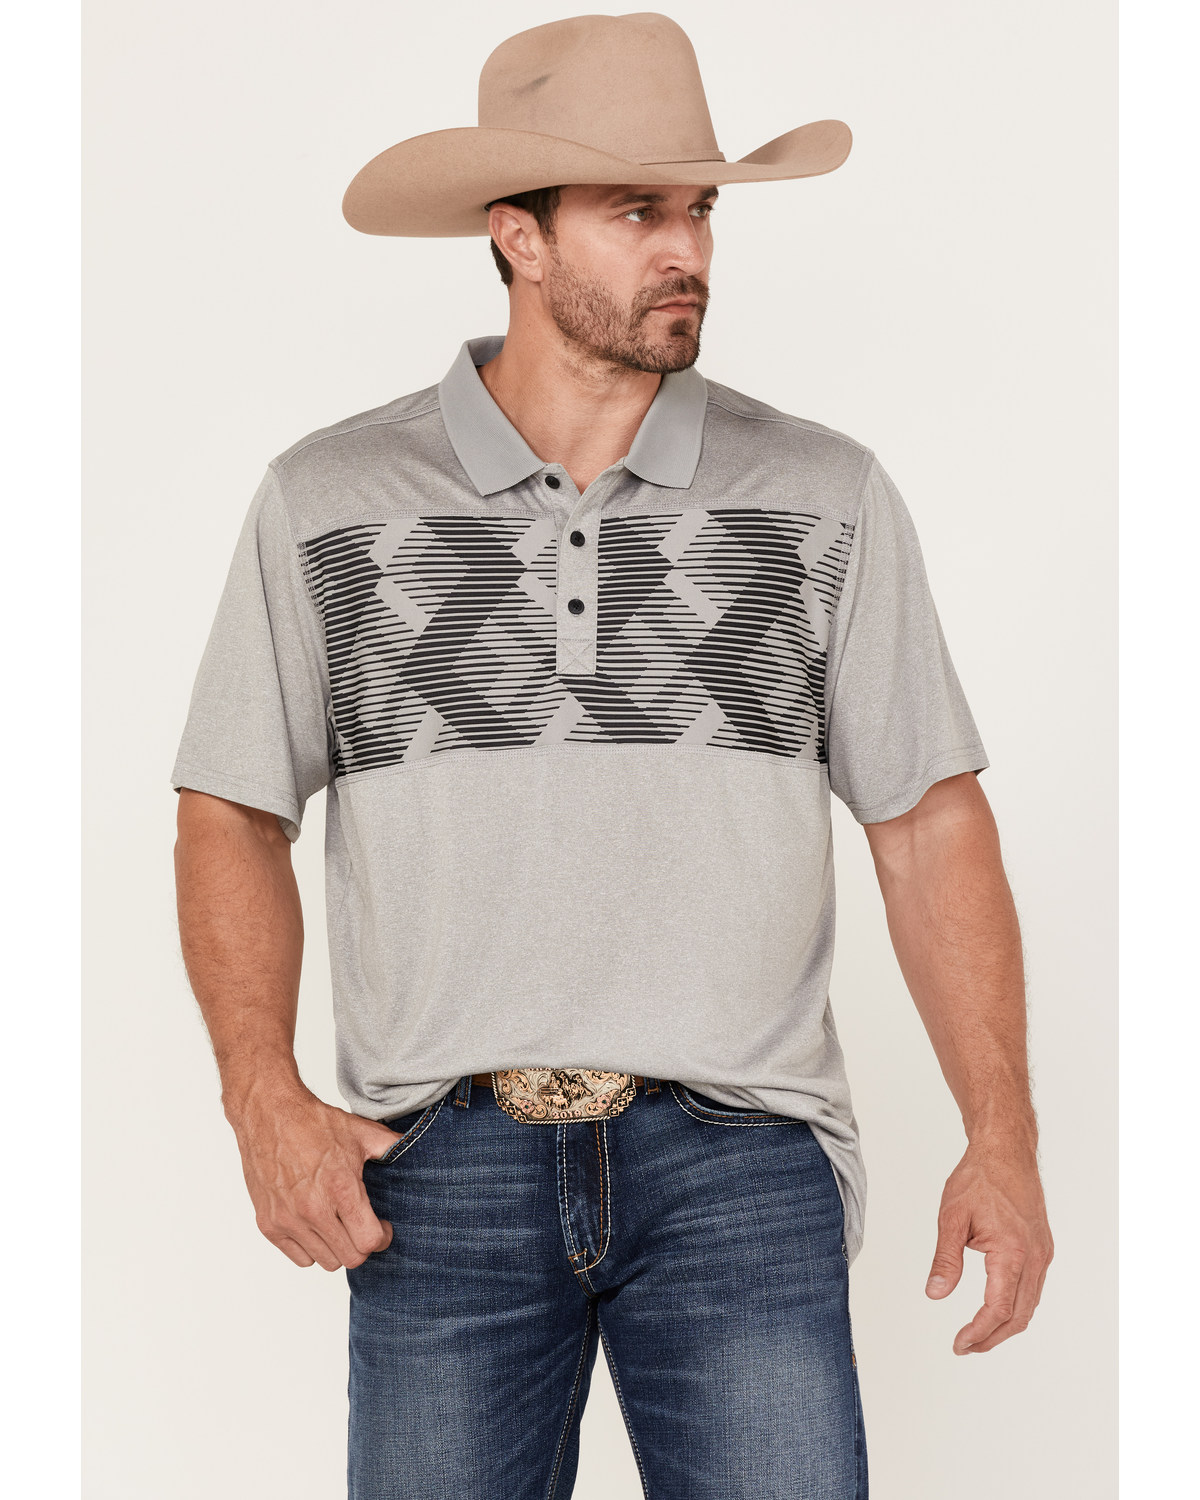 RANK 45® Men's Sunfisher Chest Stripe Short Sleeve Polo Shirt